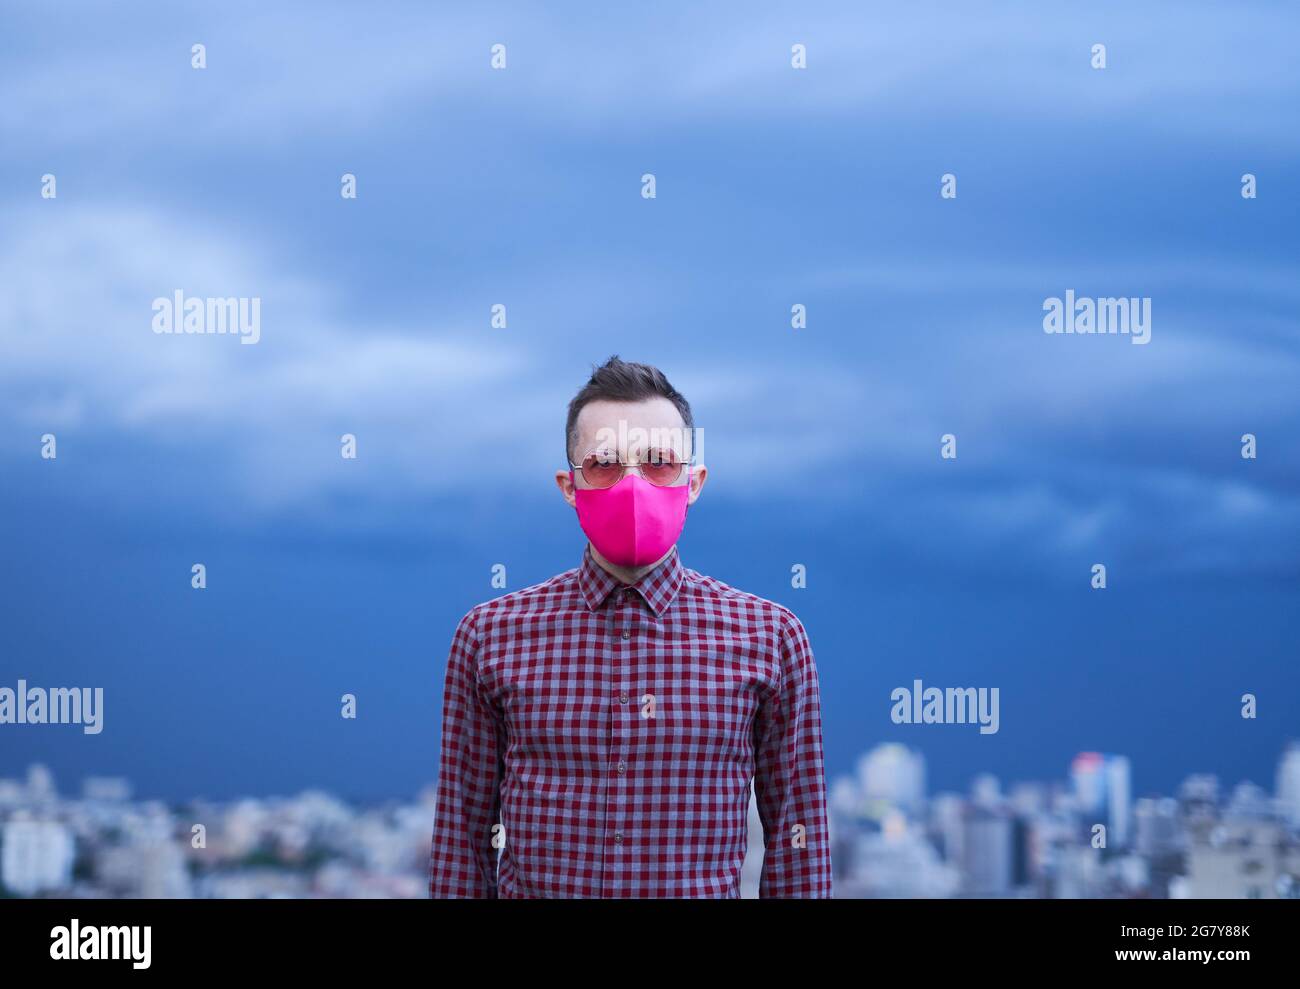 Beau caucasien gay en rose masque de protection médical regardant directement dans l'appareil photo. Portrait de homme avec fond de temps pluvieux et horizon urbain. Concept de thème LGBTQ. Image iimage de haute qualité Banque D'Images